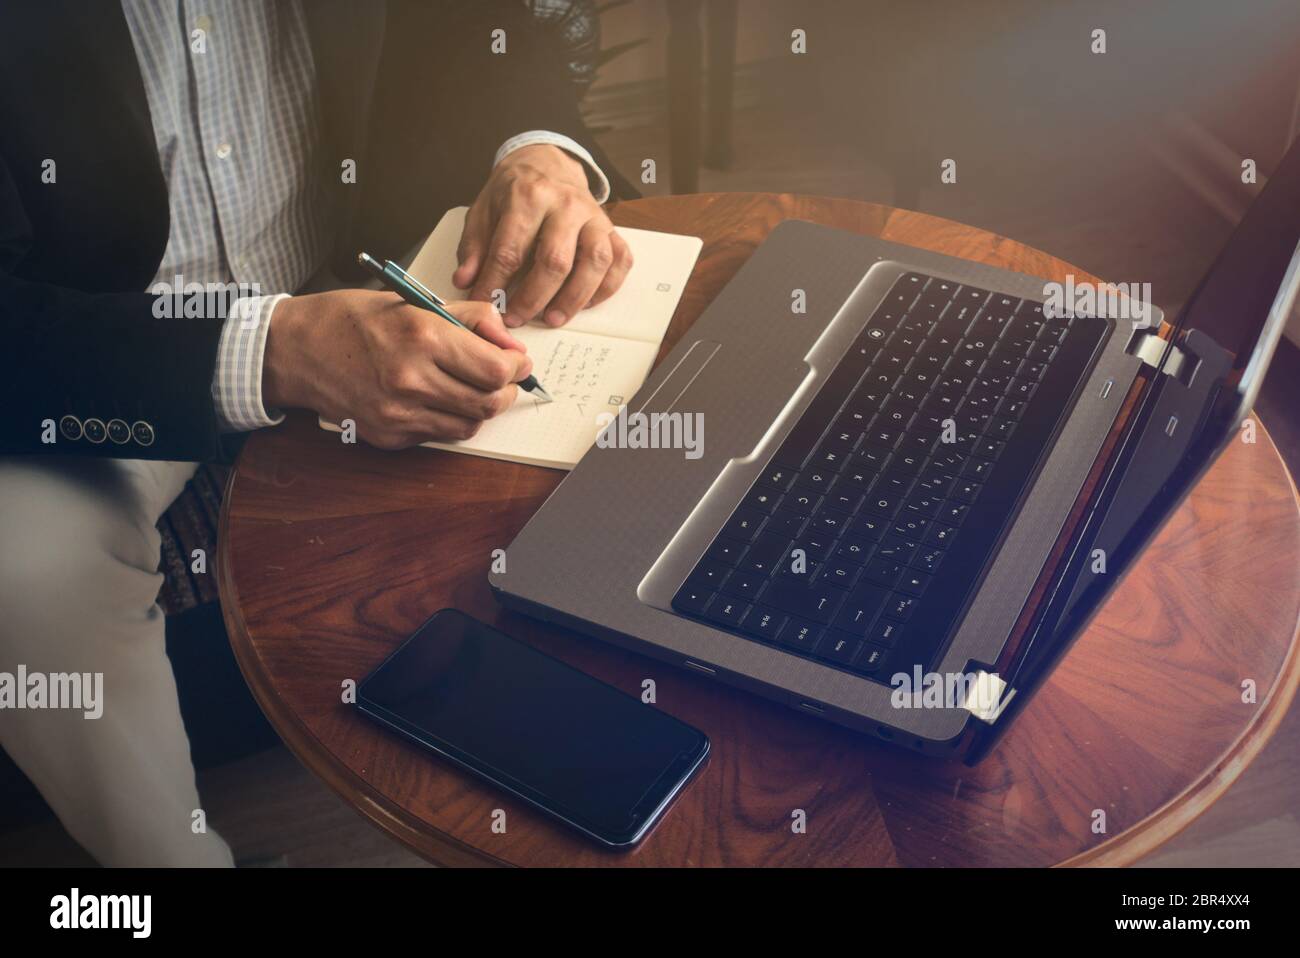 Professioneller Senior, der mit einem Stift Notizen macht, während er mit seinem Laptop eine Konferenz führt und dabei ein Telefon auf einem Tisch daneben hat Stockfoto